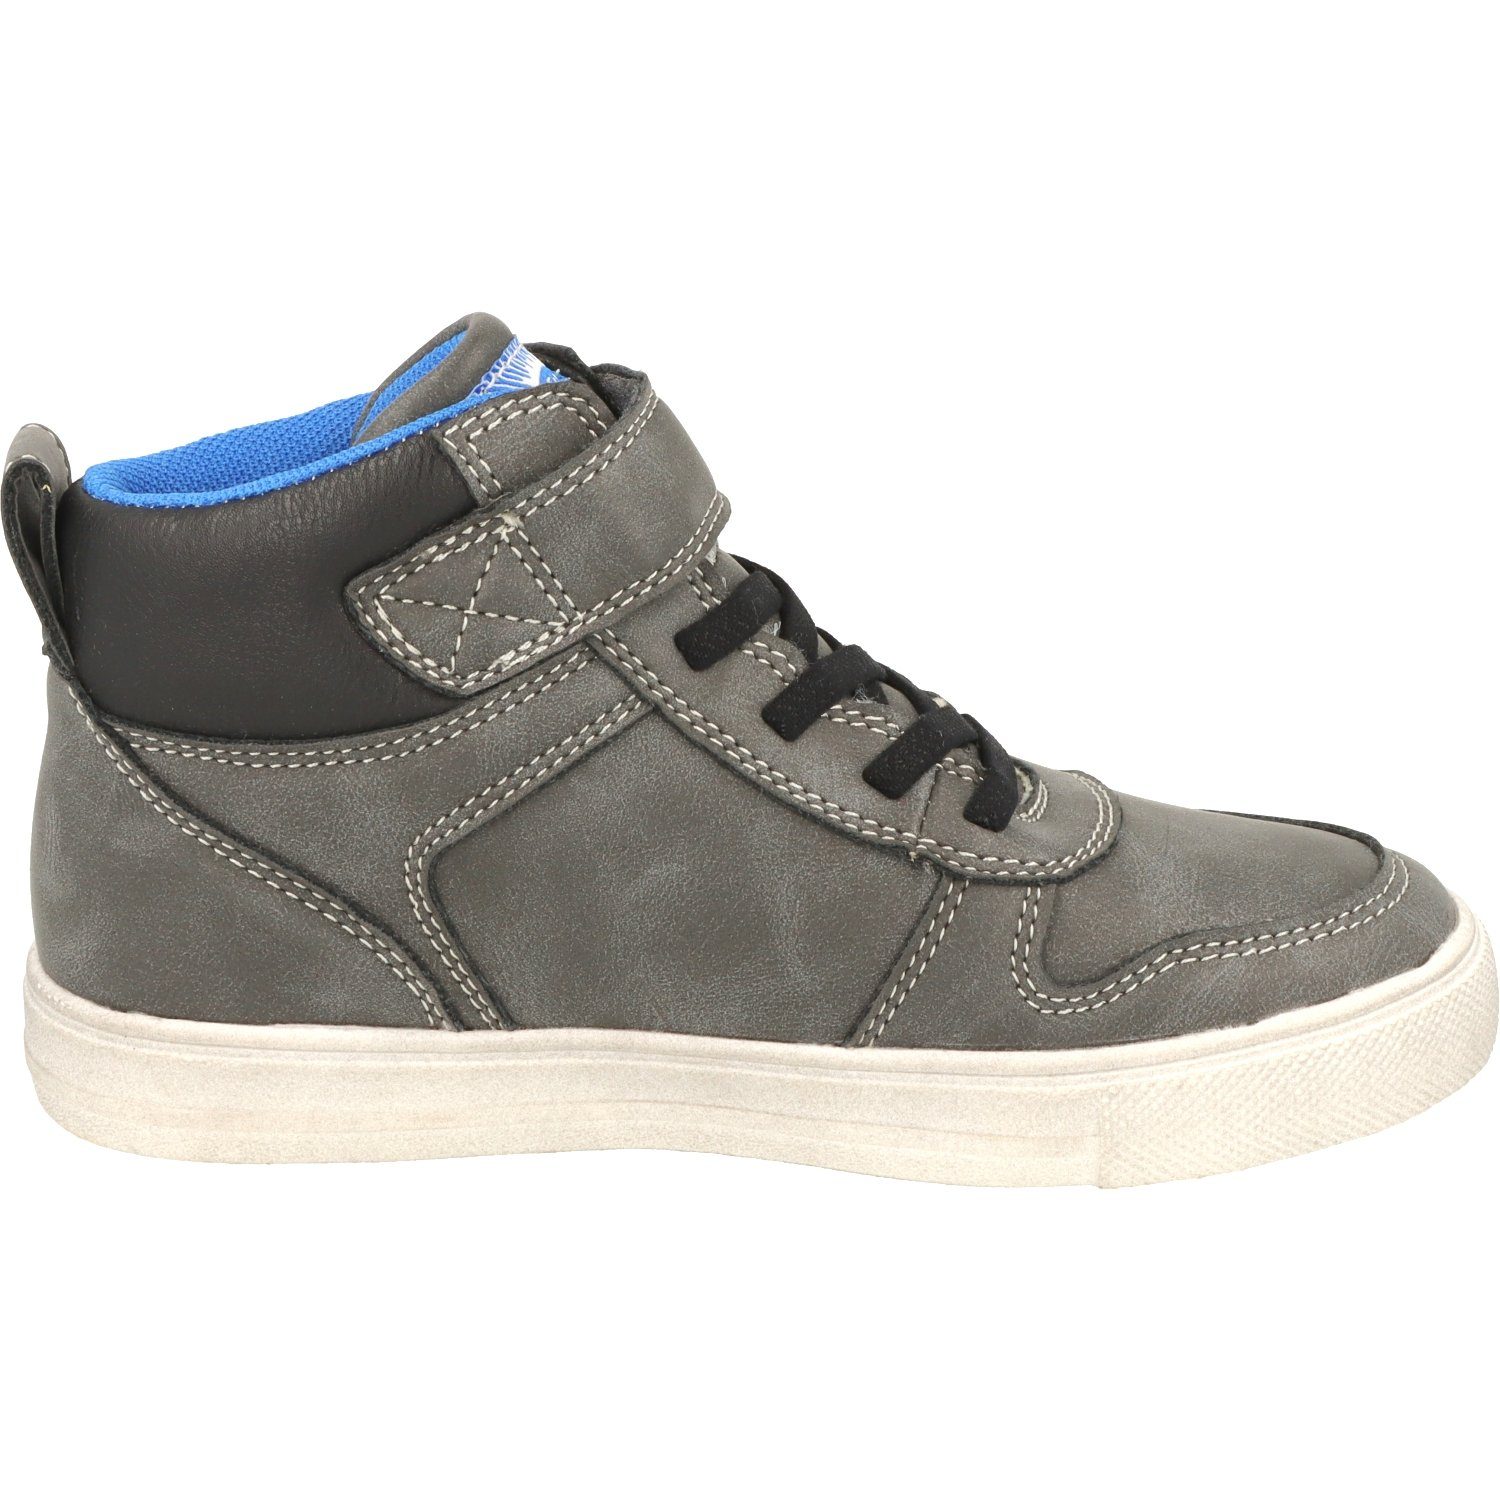 Indigo Wasserabweisend Sneaker Jungen 451-074 Dk.Grey Schuhe Schnürschuhe Hi-Top